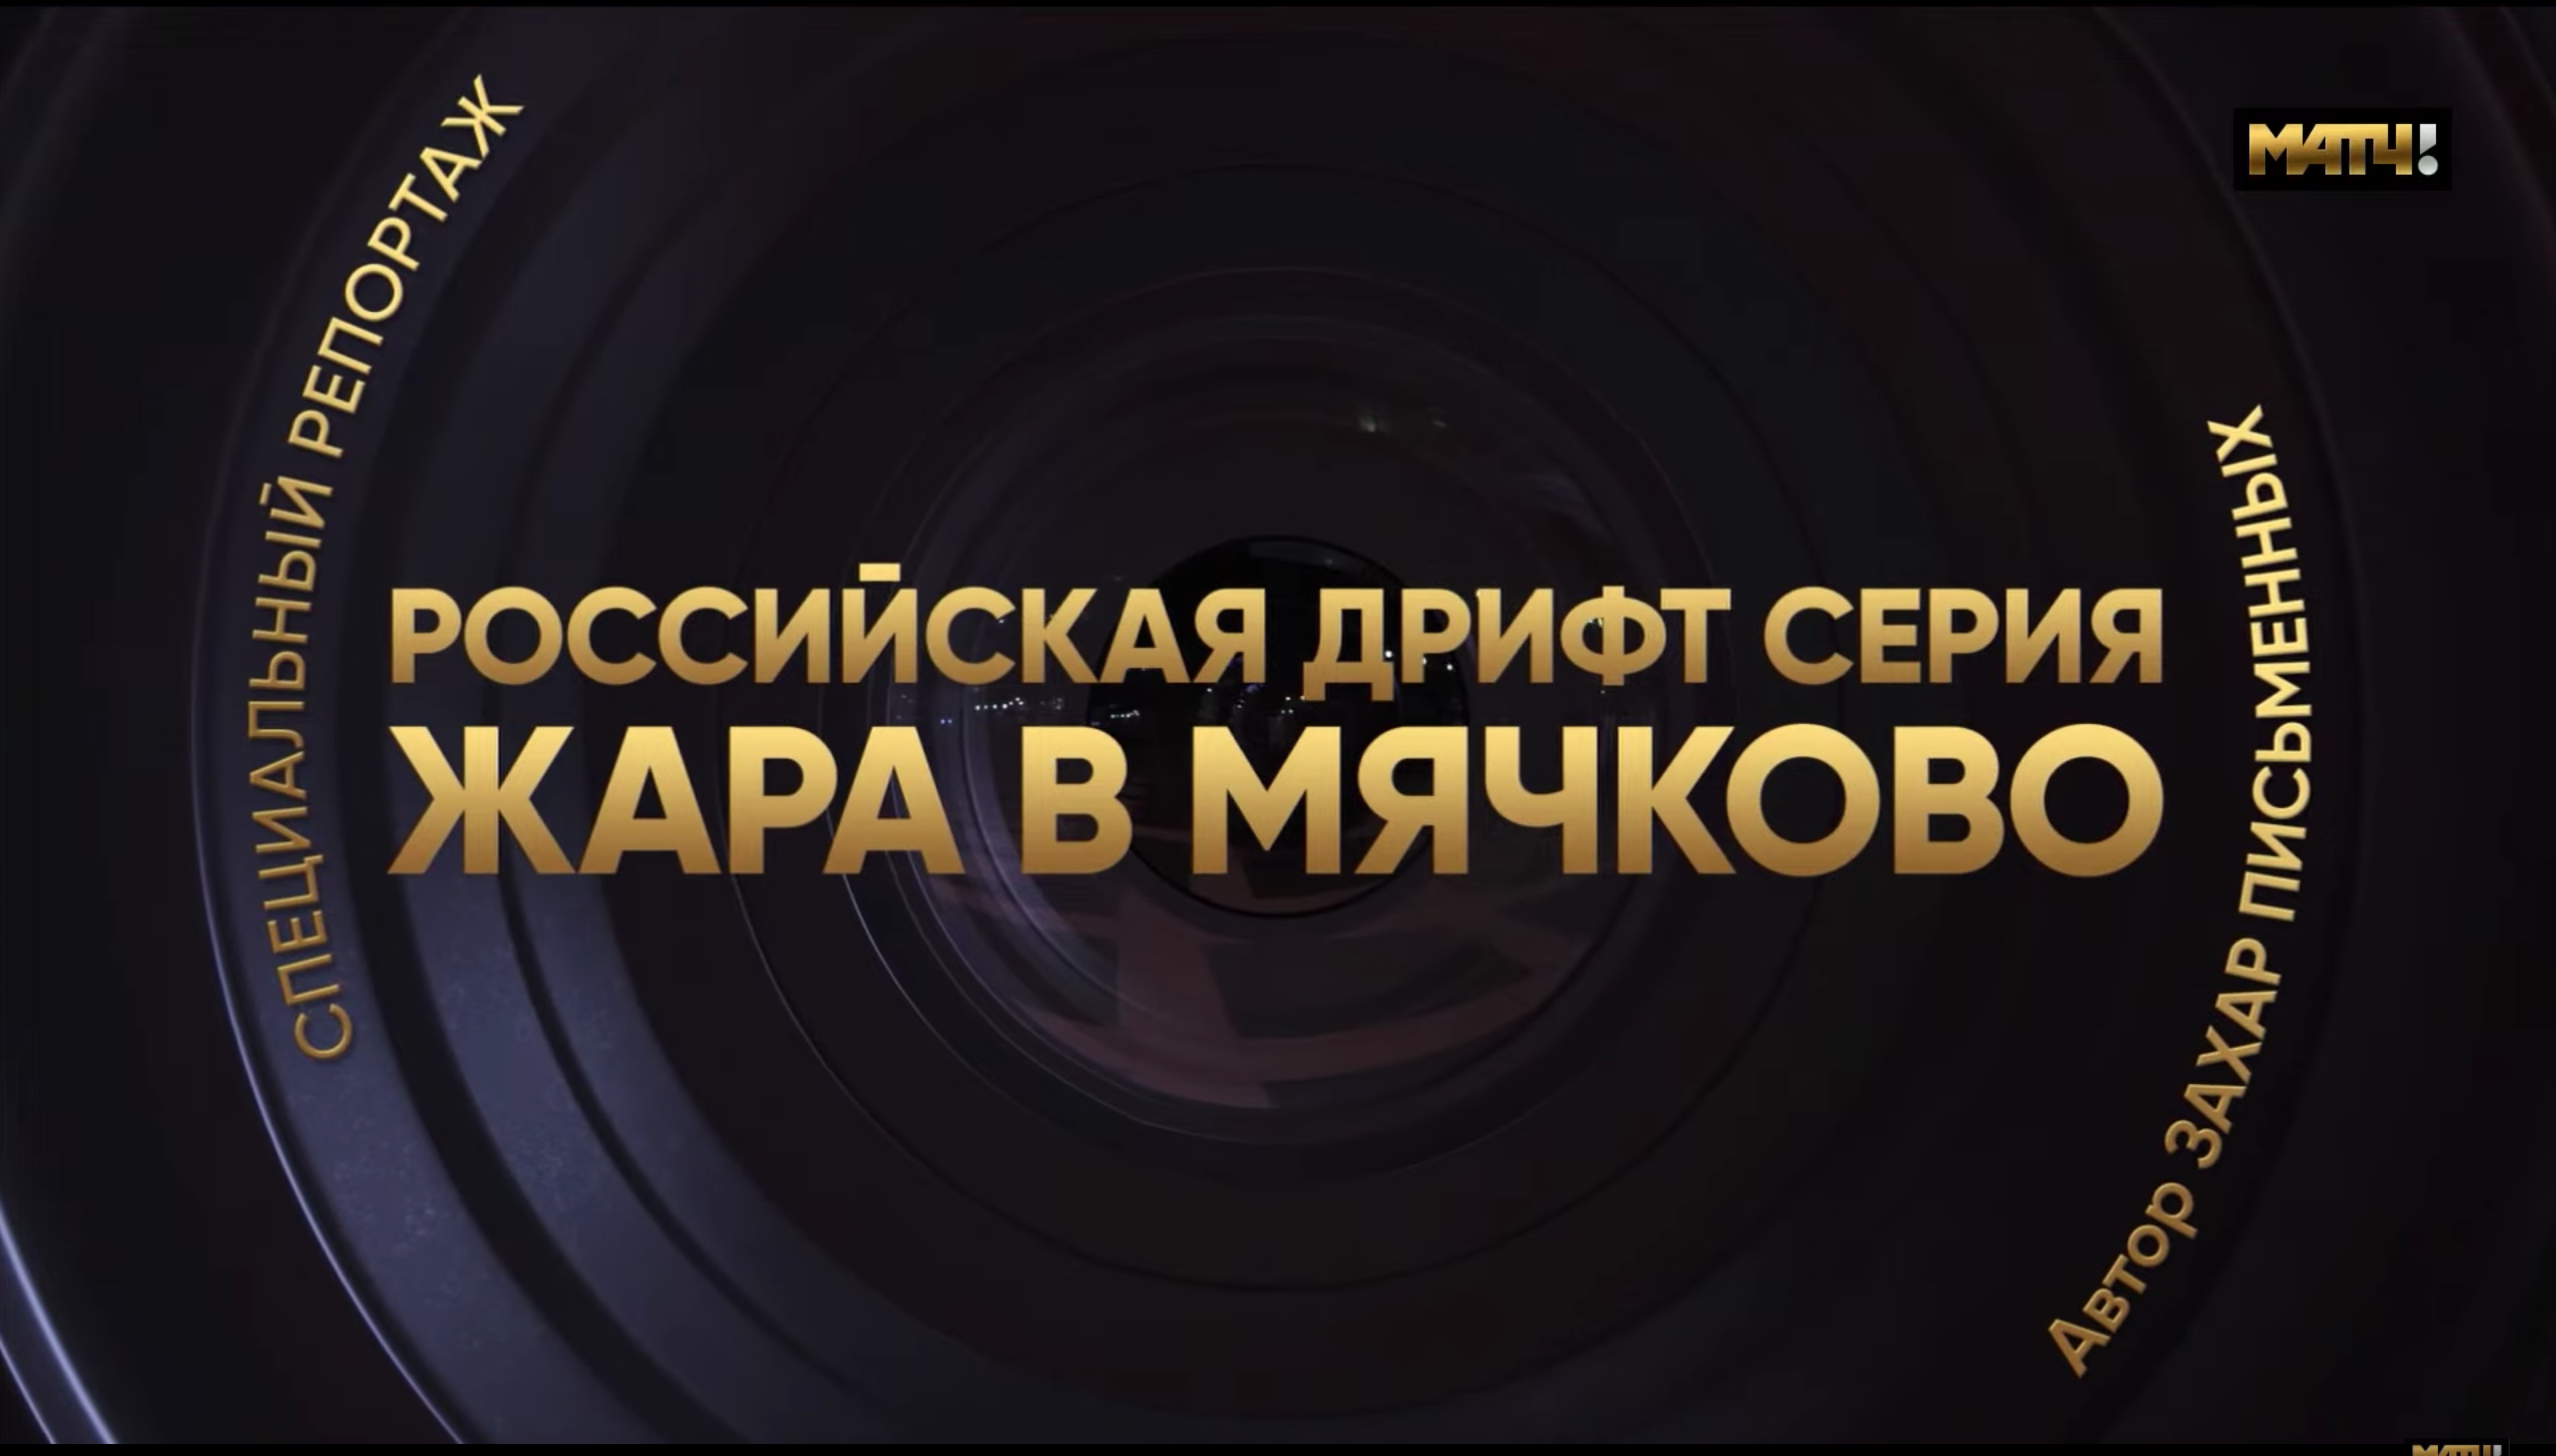 Жара в Мячково – специальный репортаж МАТЧ ТВ